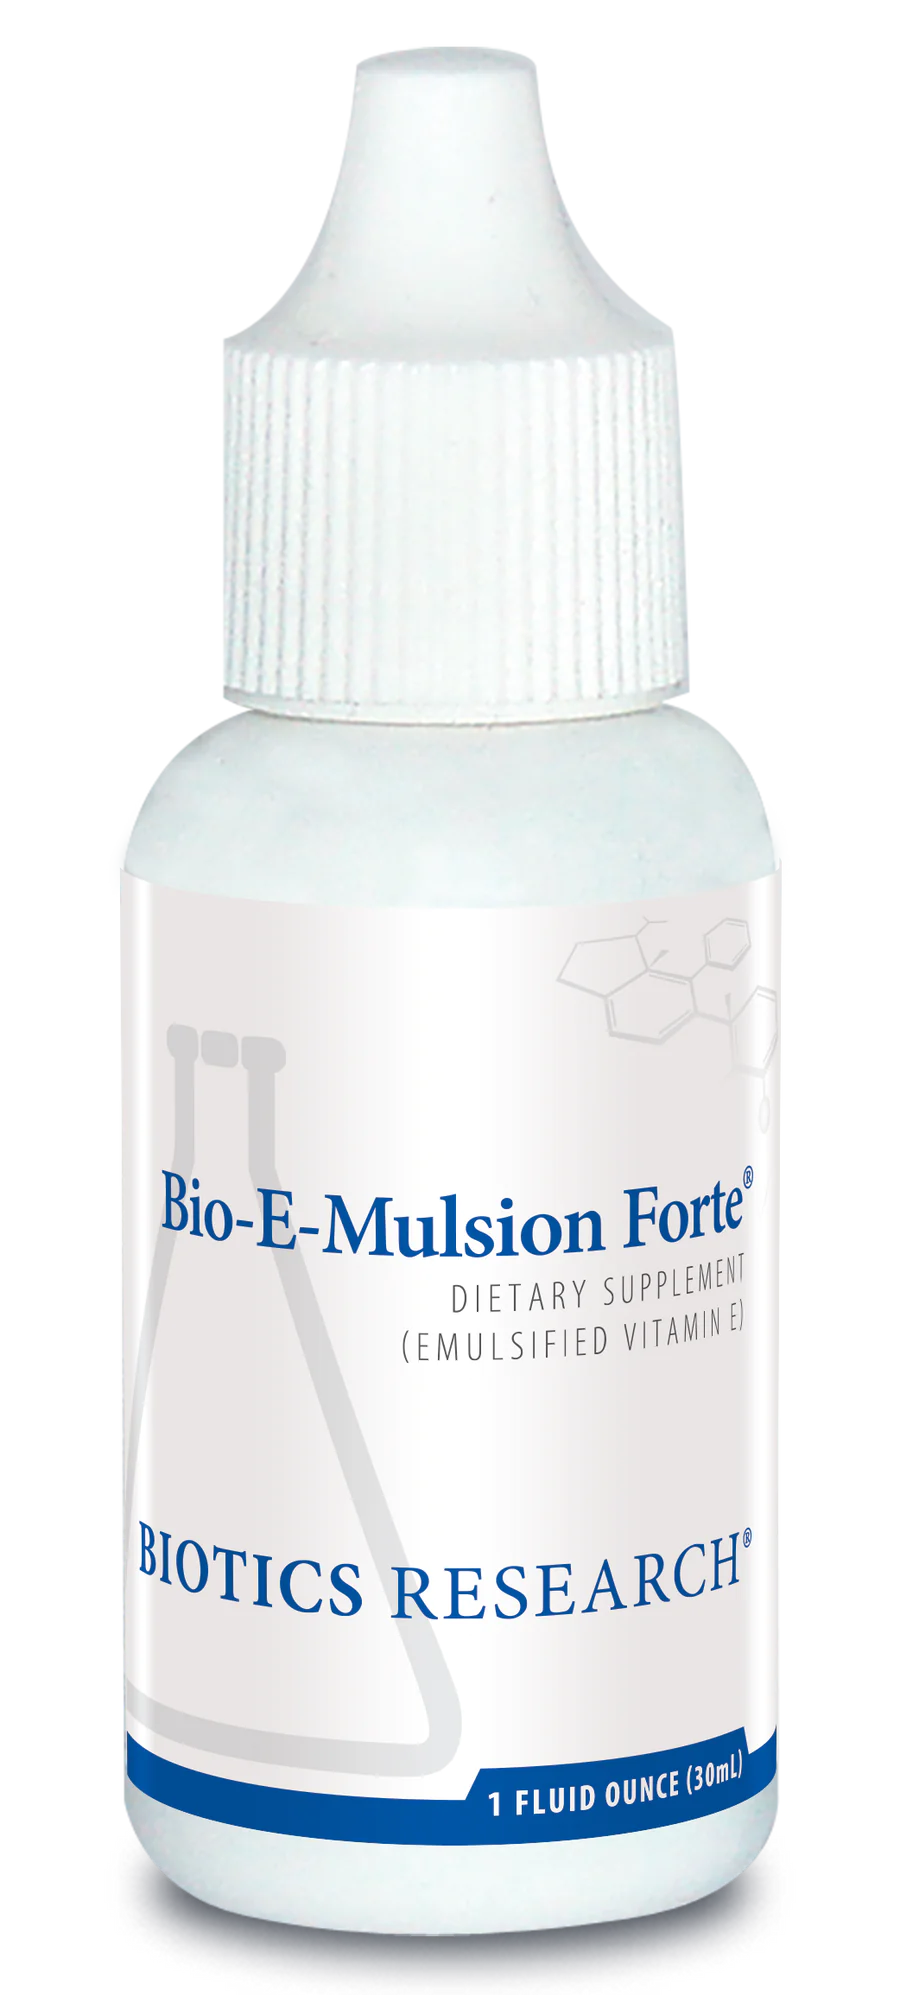 Bio-E-Mulsion Forte ®